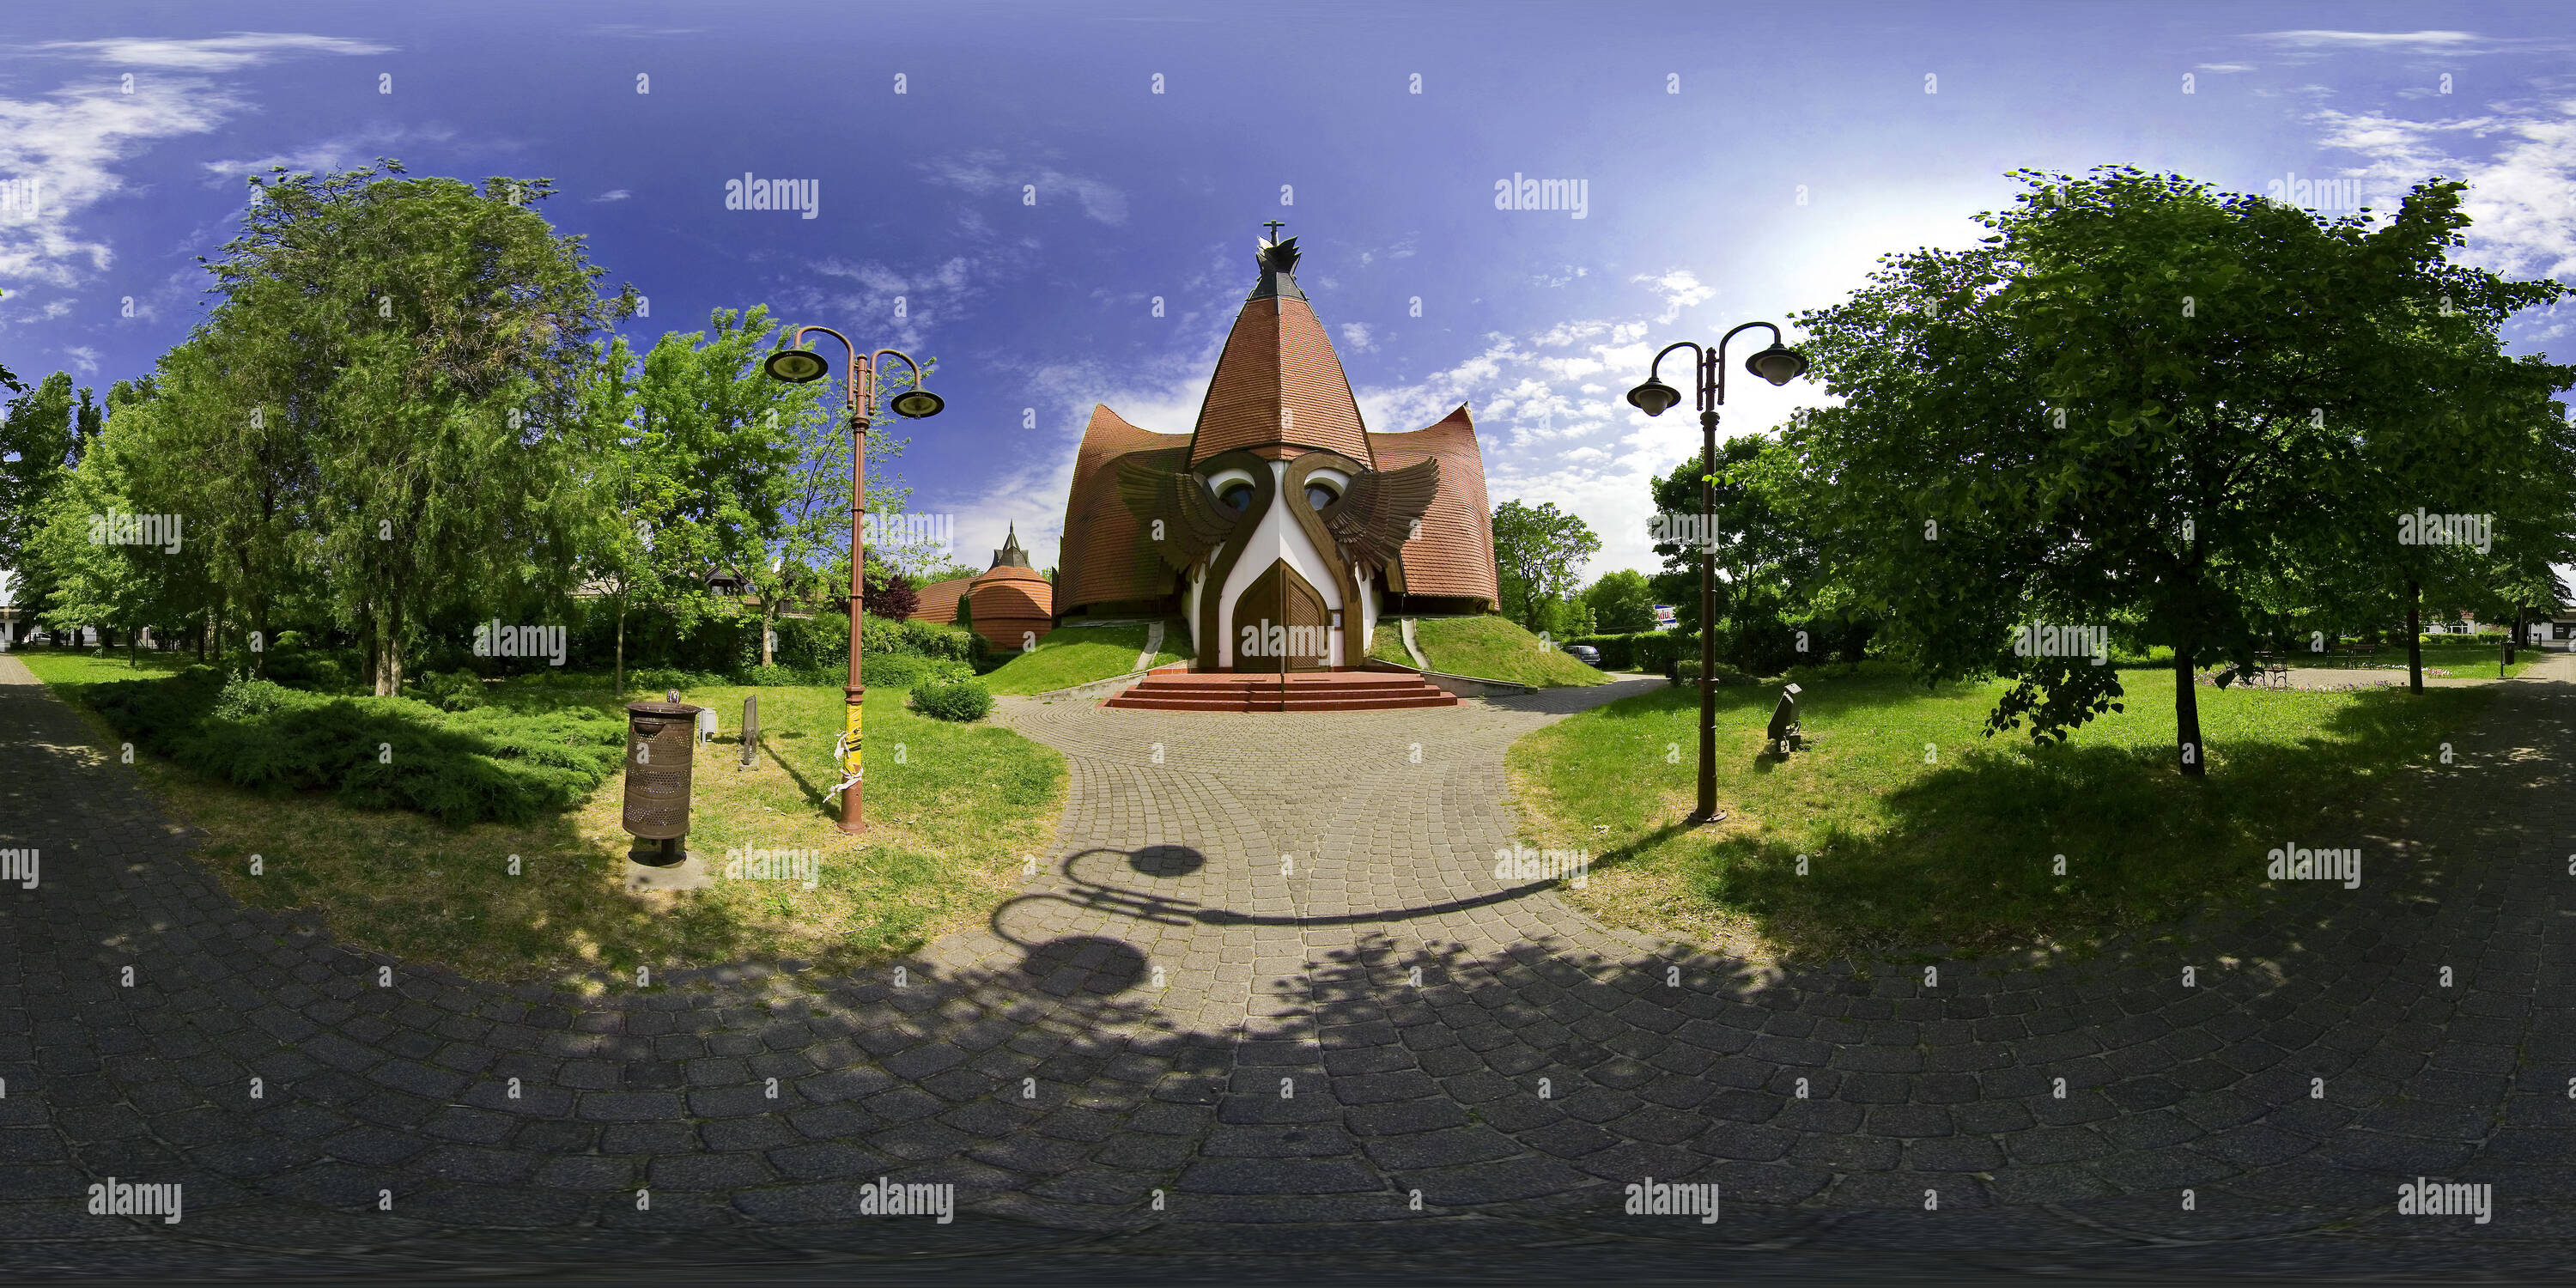 Visualizzazione panoramica a 360 gradi di Chiesa Evangelica - plannig Imre Makovecz